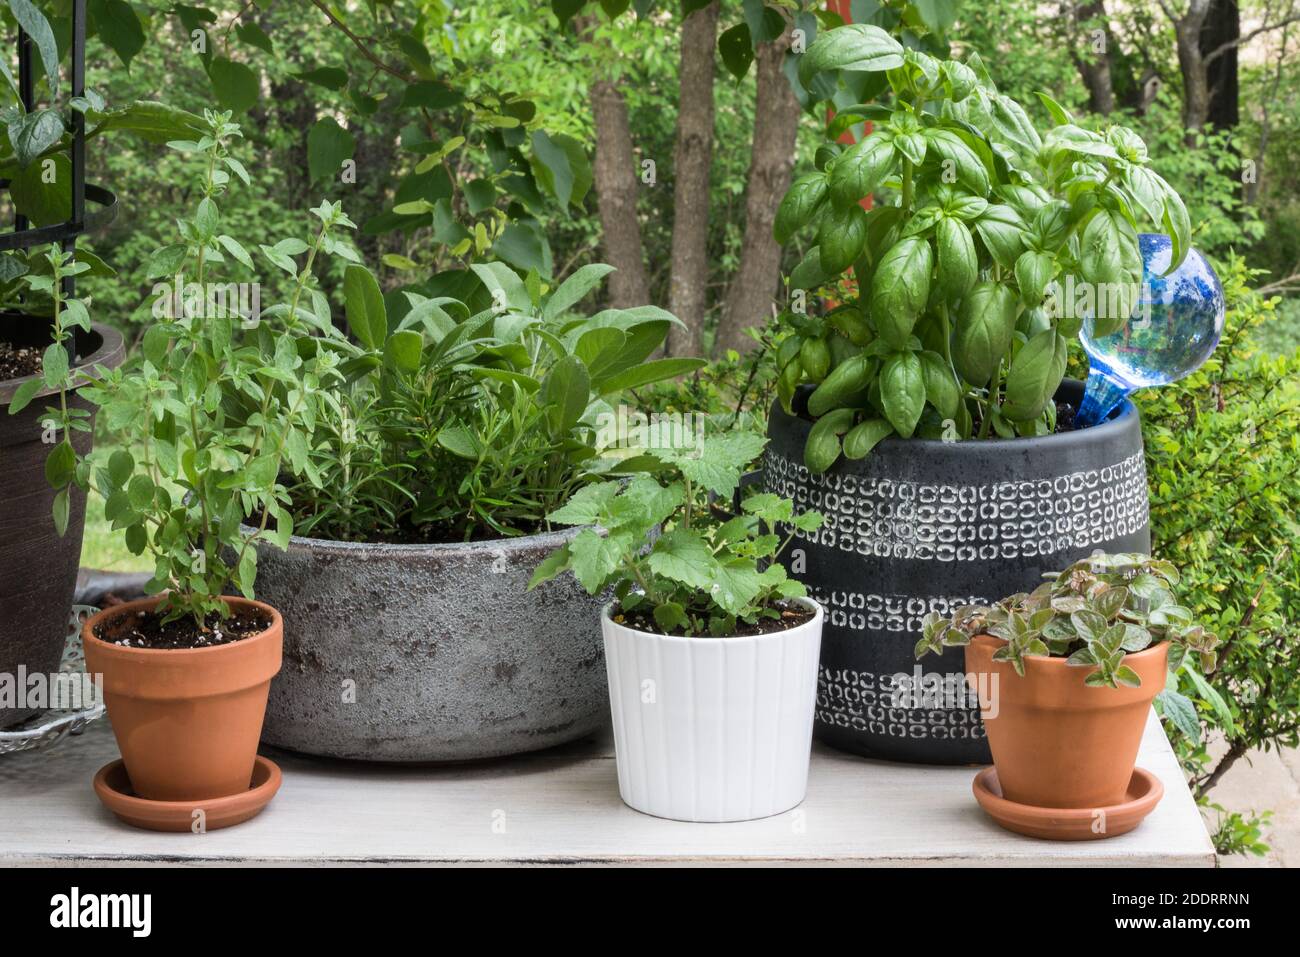 Herb Garden in Pots Stock Photo